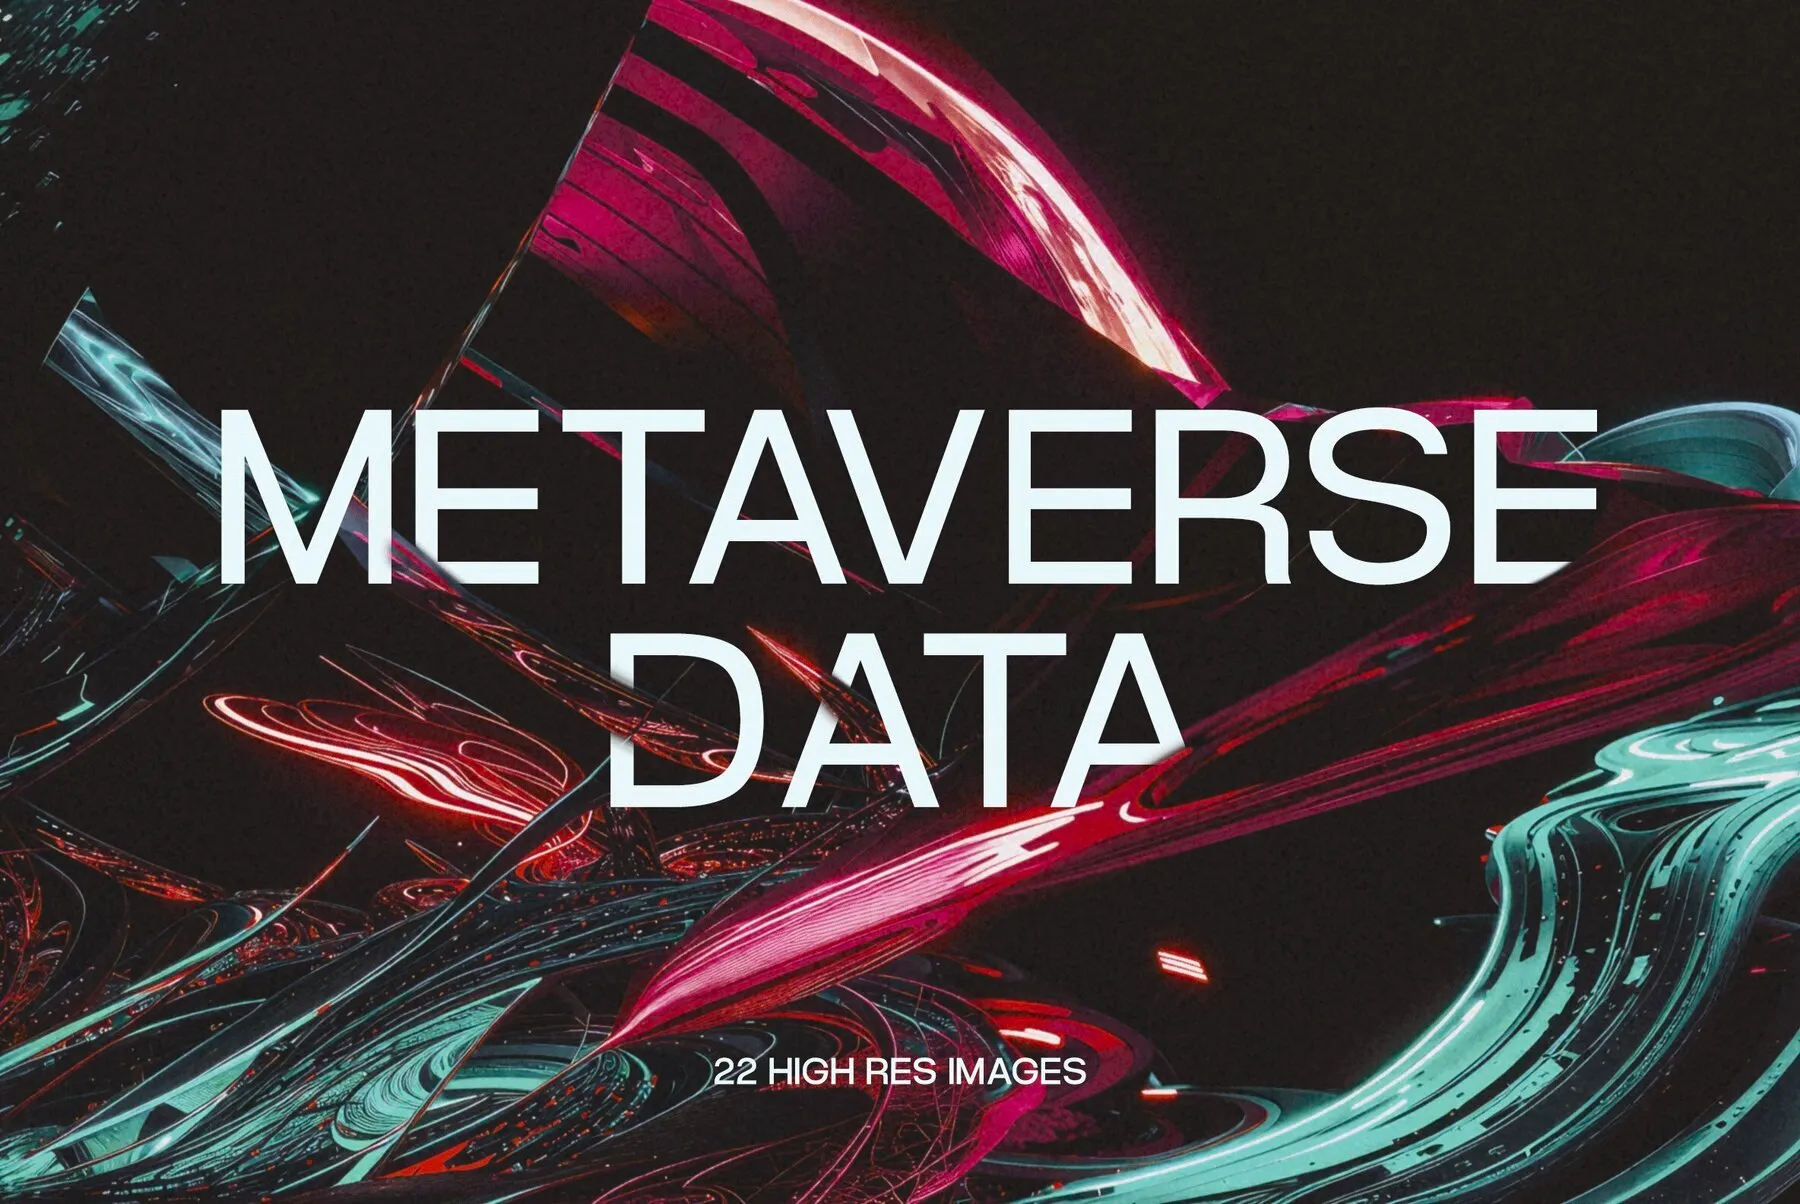 Metaverse Data